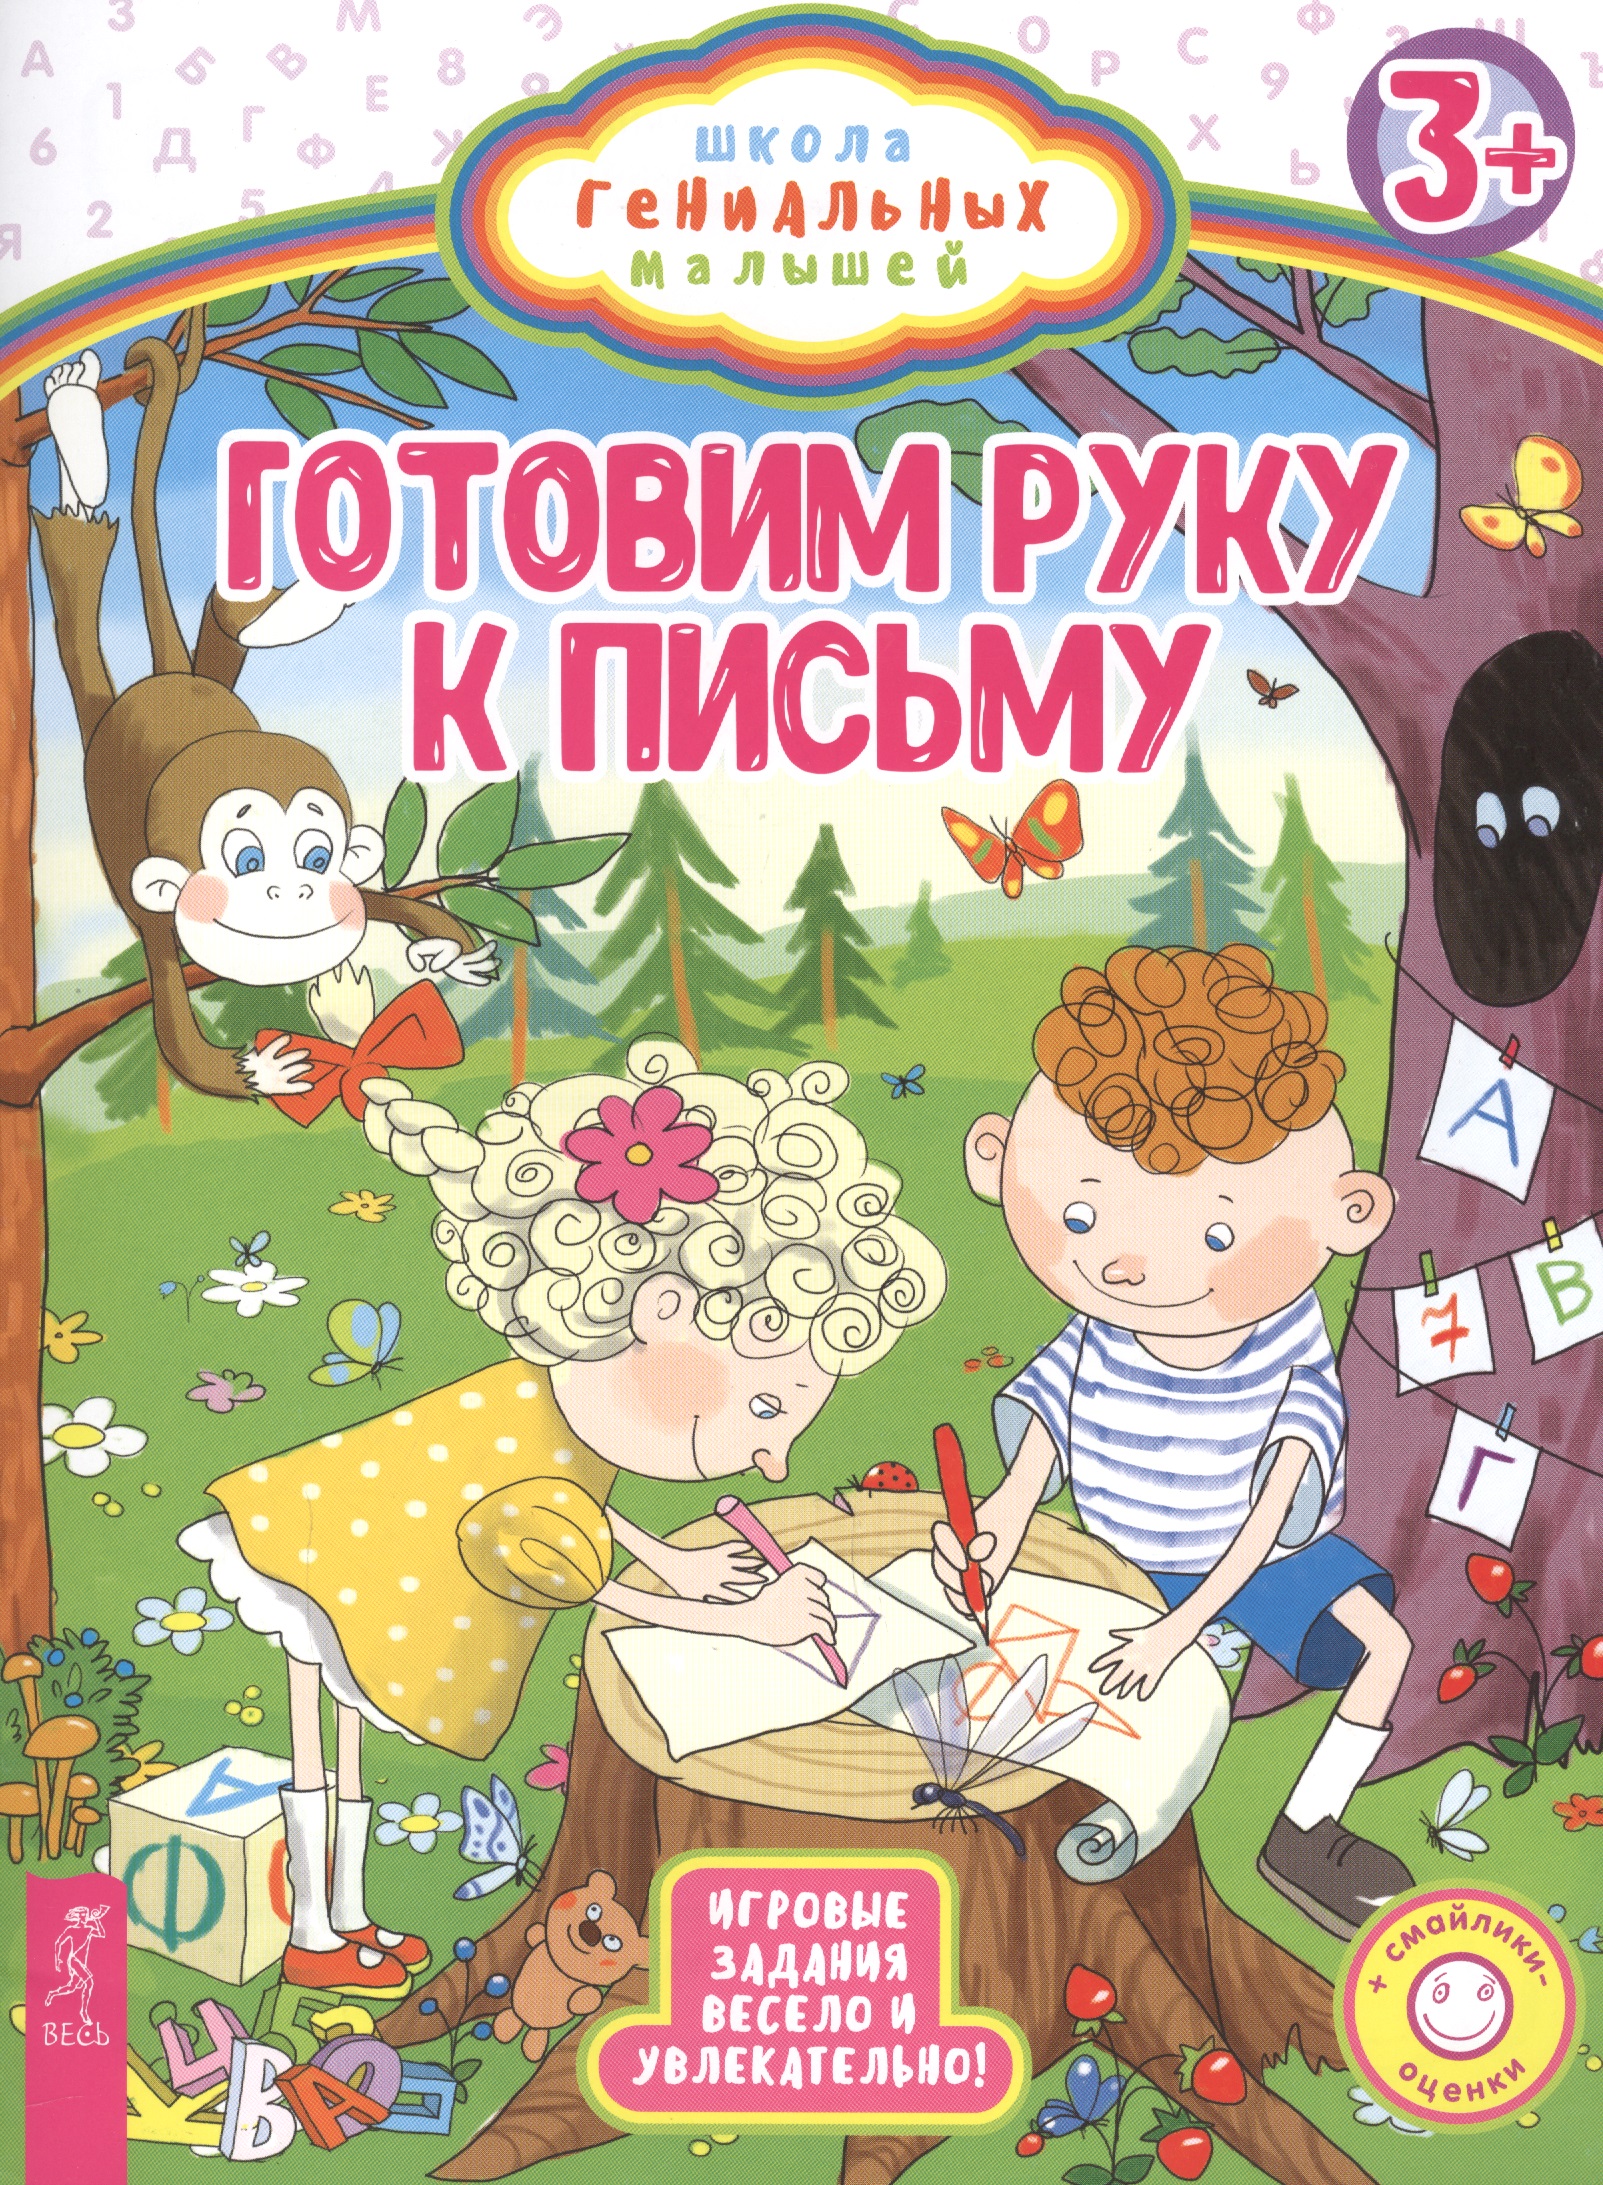 Готовим руку к письму кавер ольга дмитриевна хочу ребенка школа гениальных малышей 4 книги комплект из 5 книг